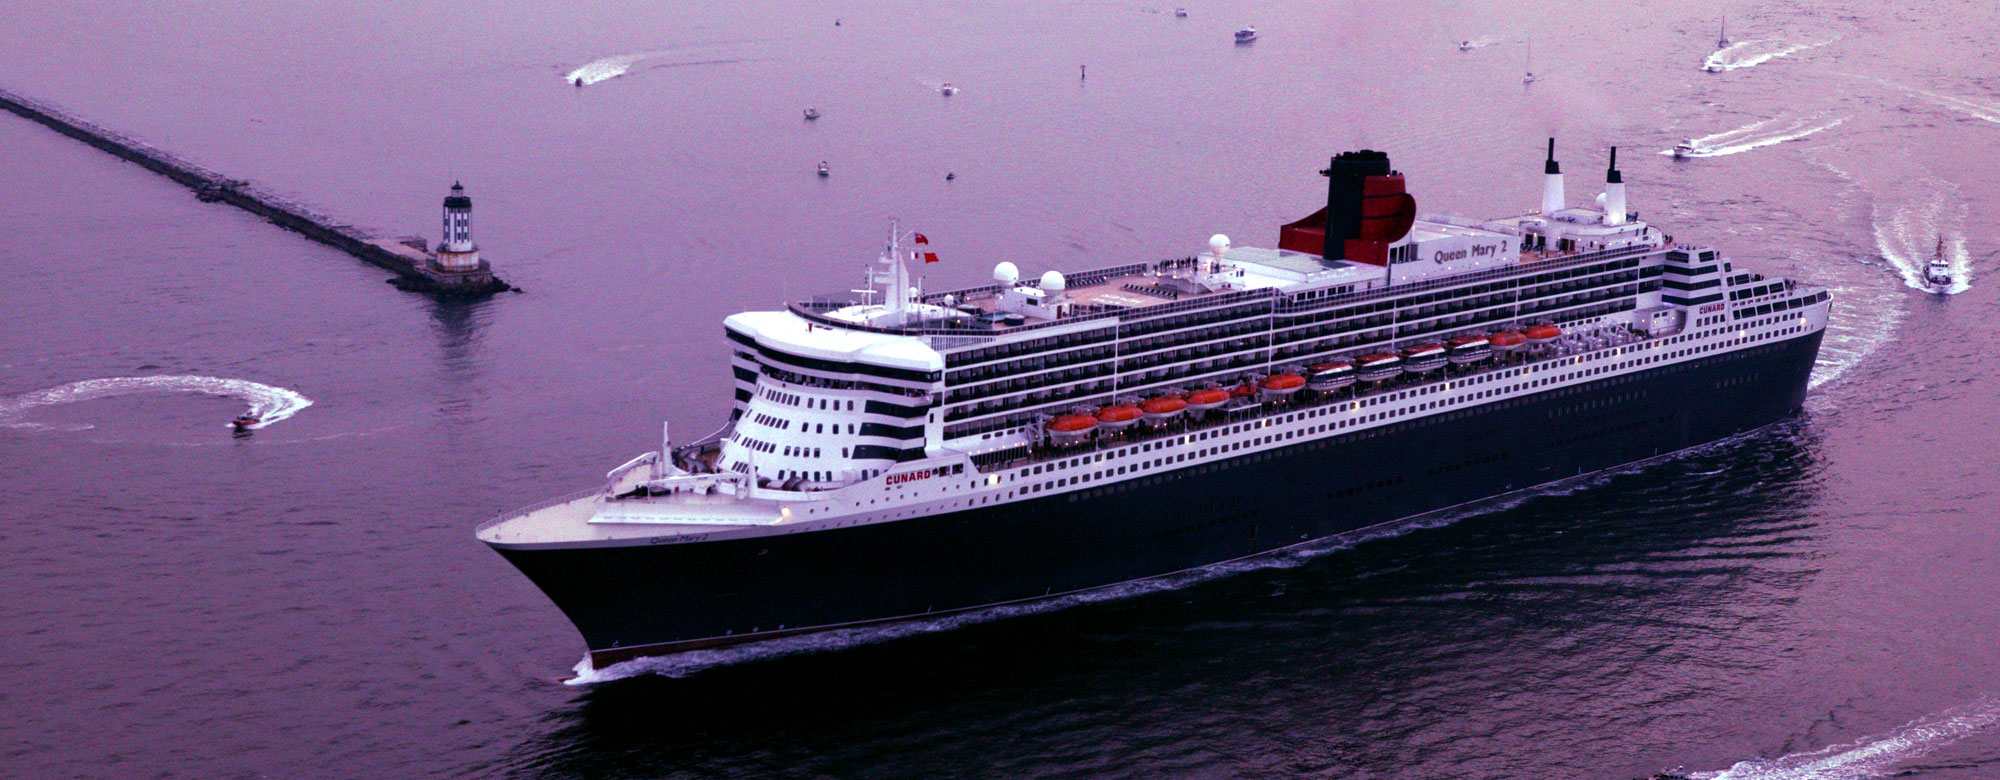 Cunard Ocean Liner